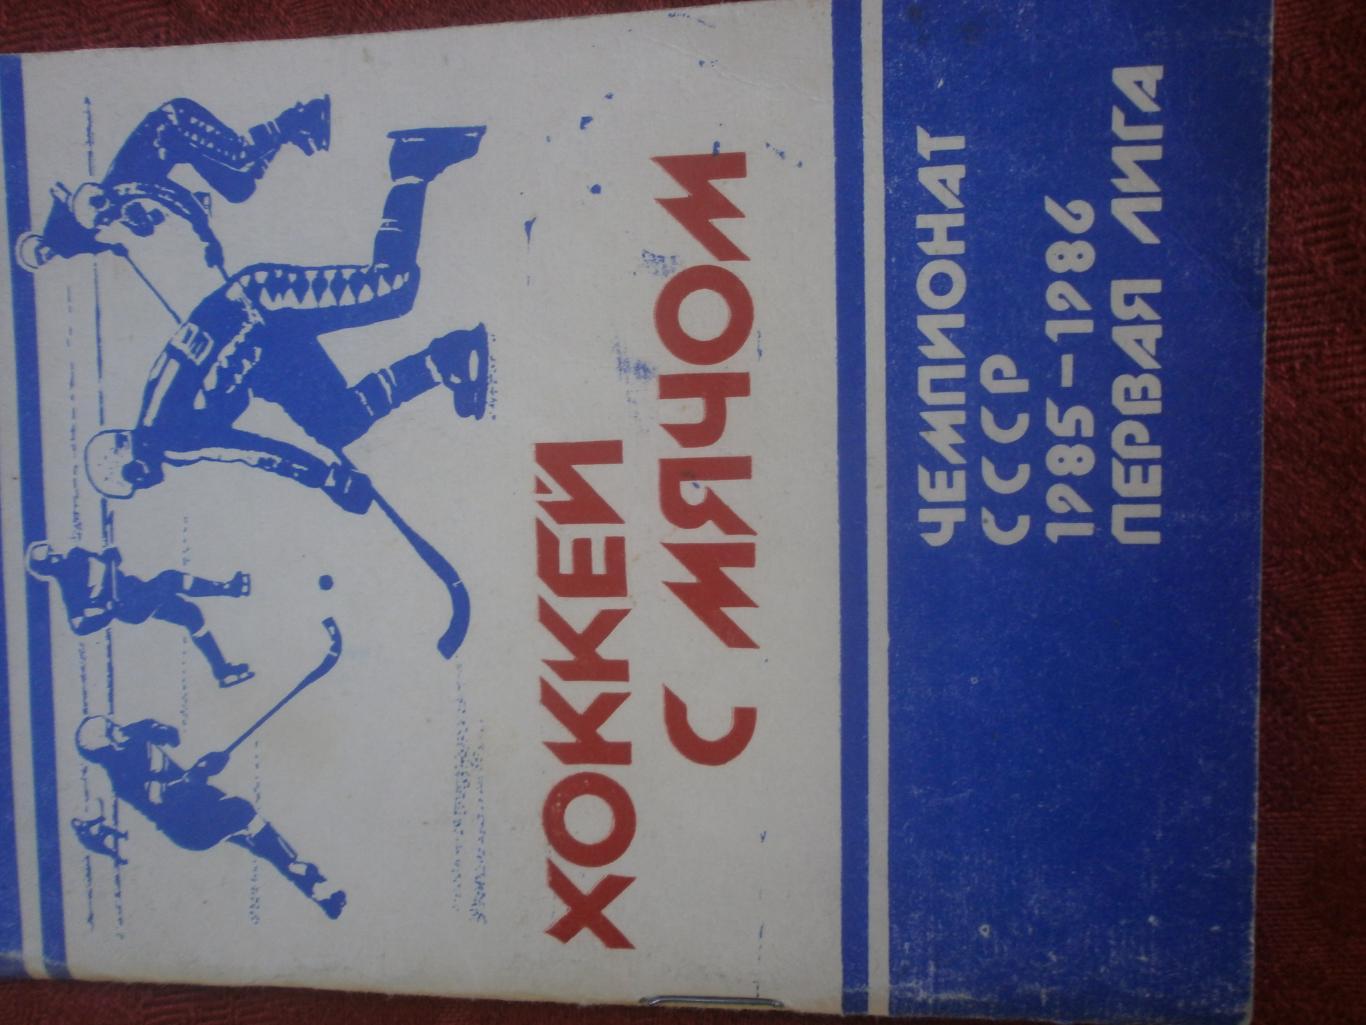 Календарь - справочник хоккей с мячом Архангельск 1985-86